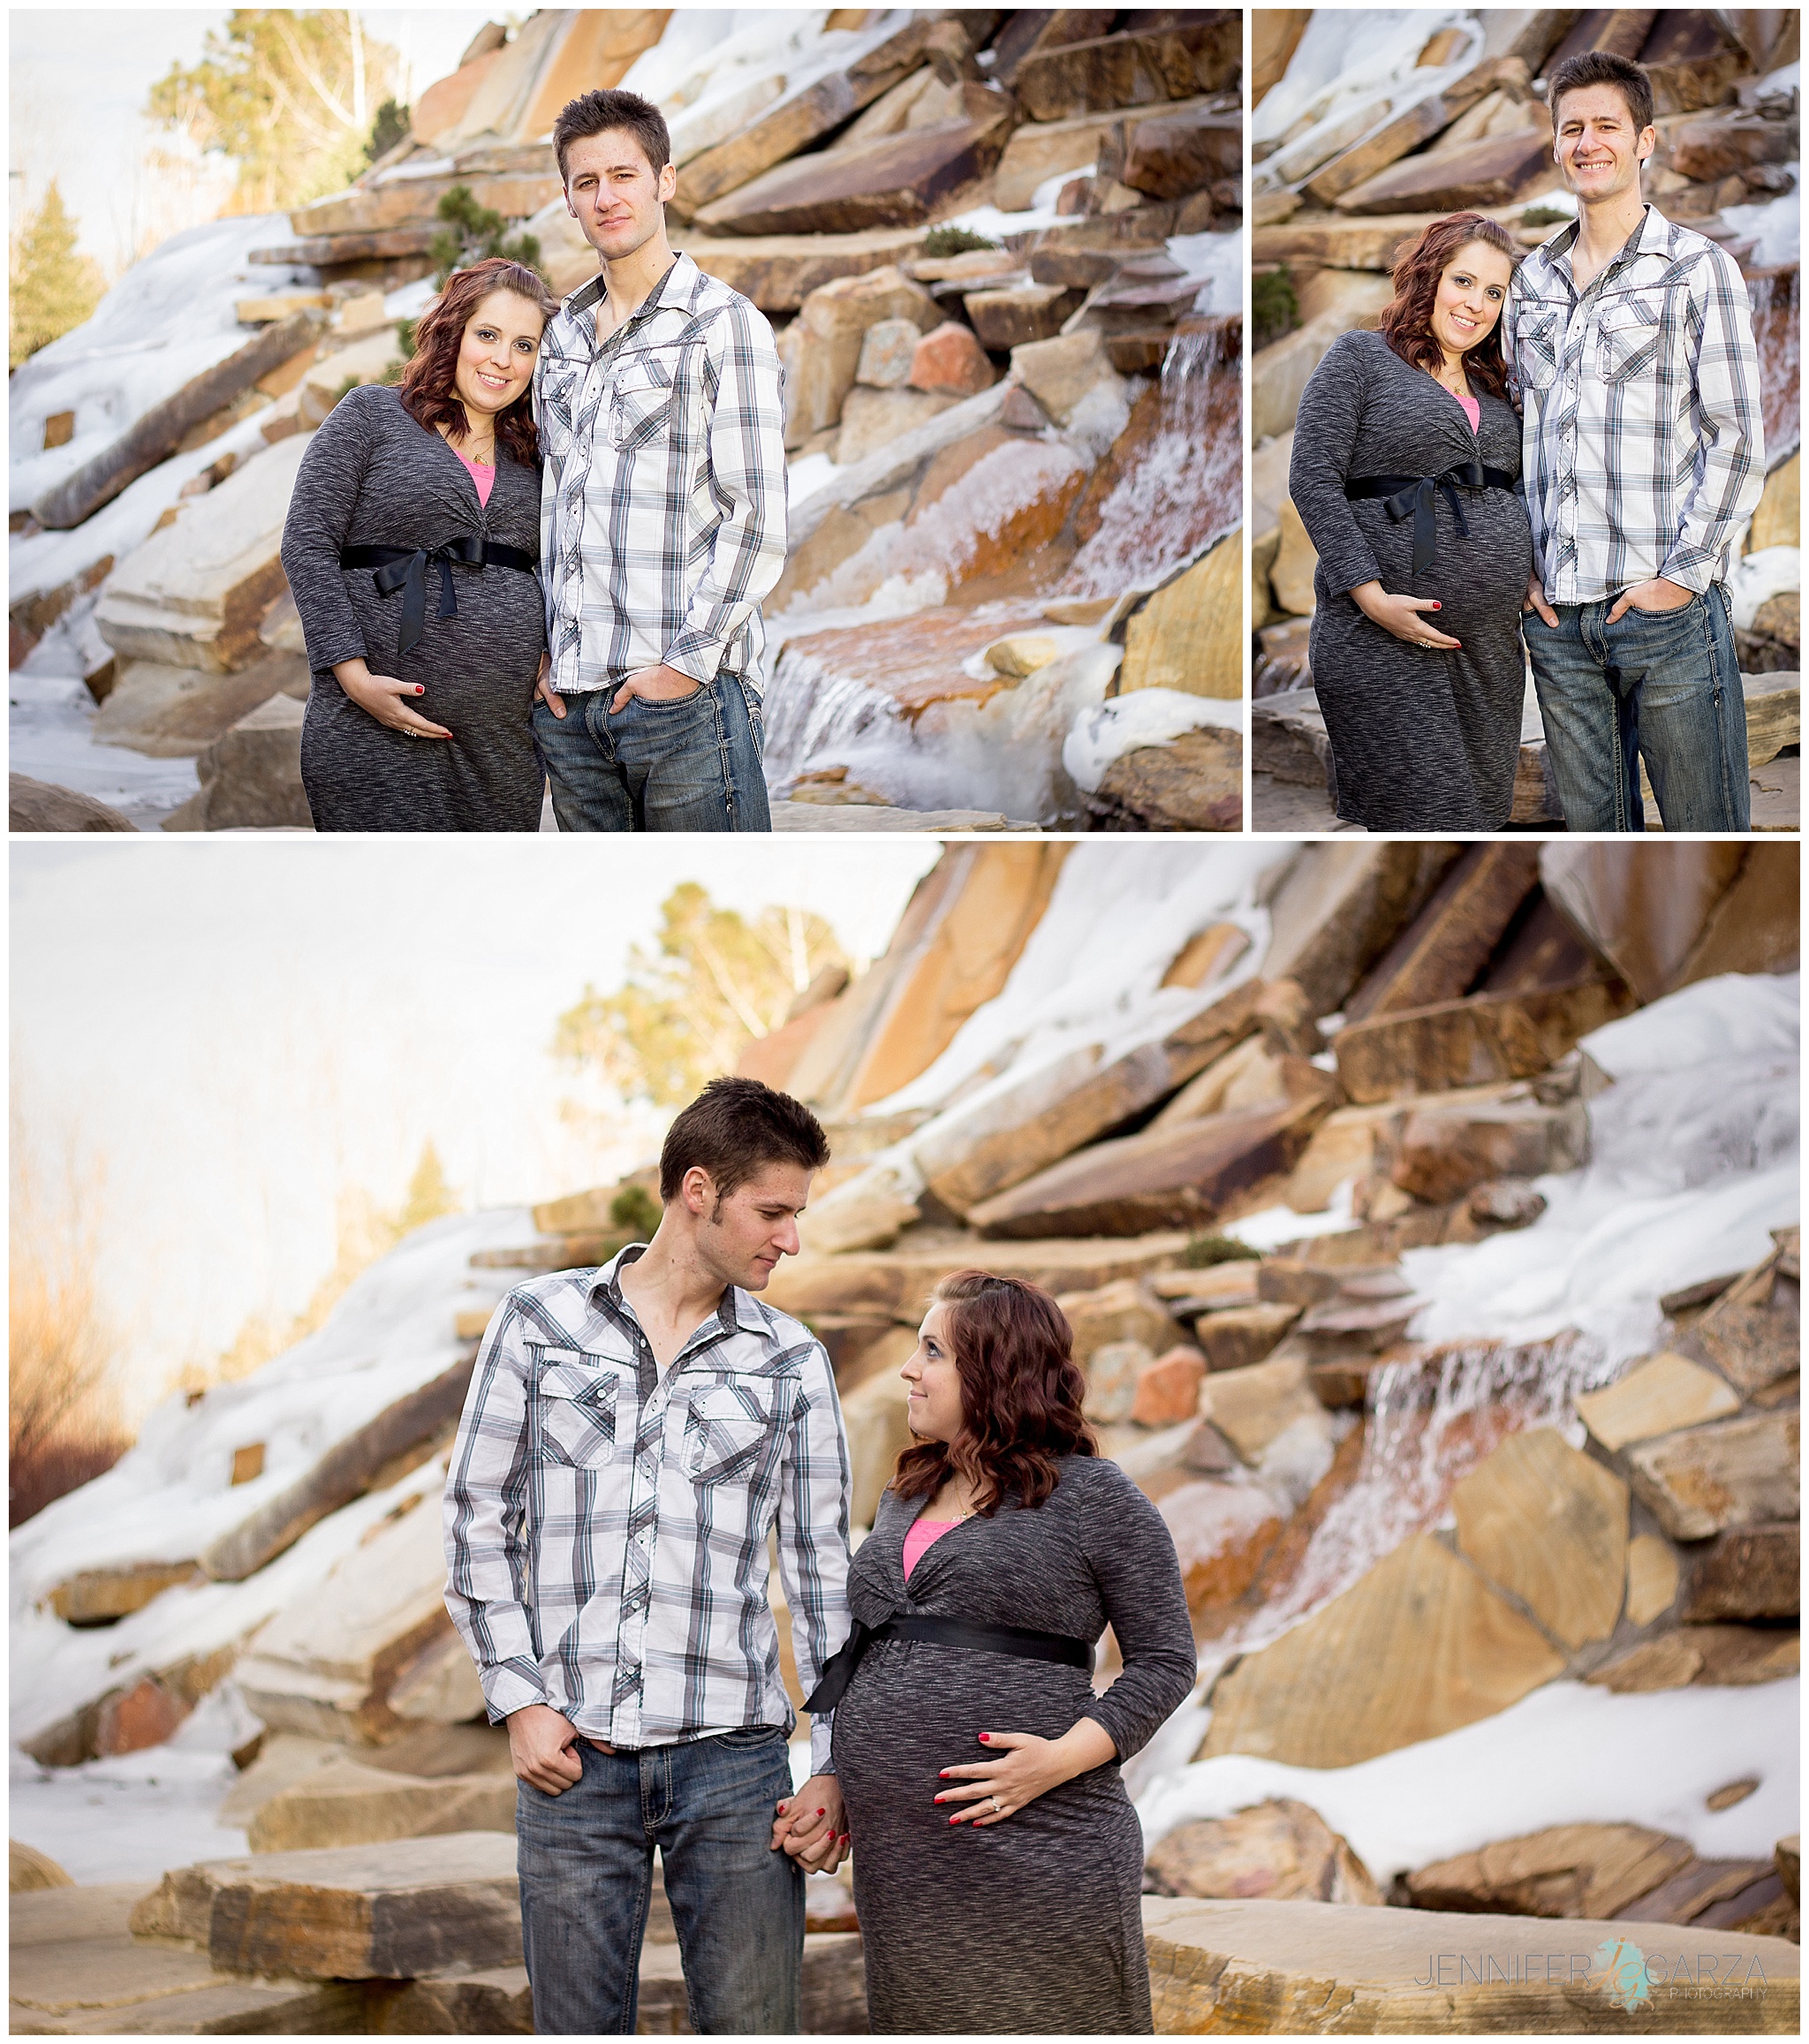 The Irwin Family - Broomfield, Colorado Maternity & Family